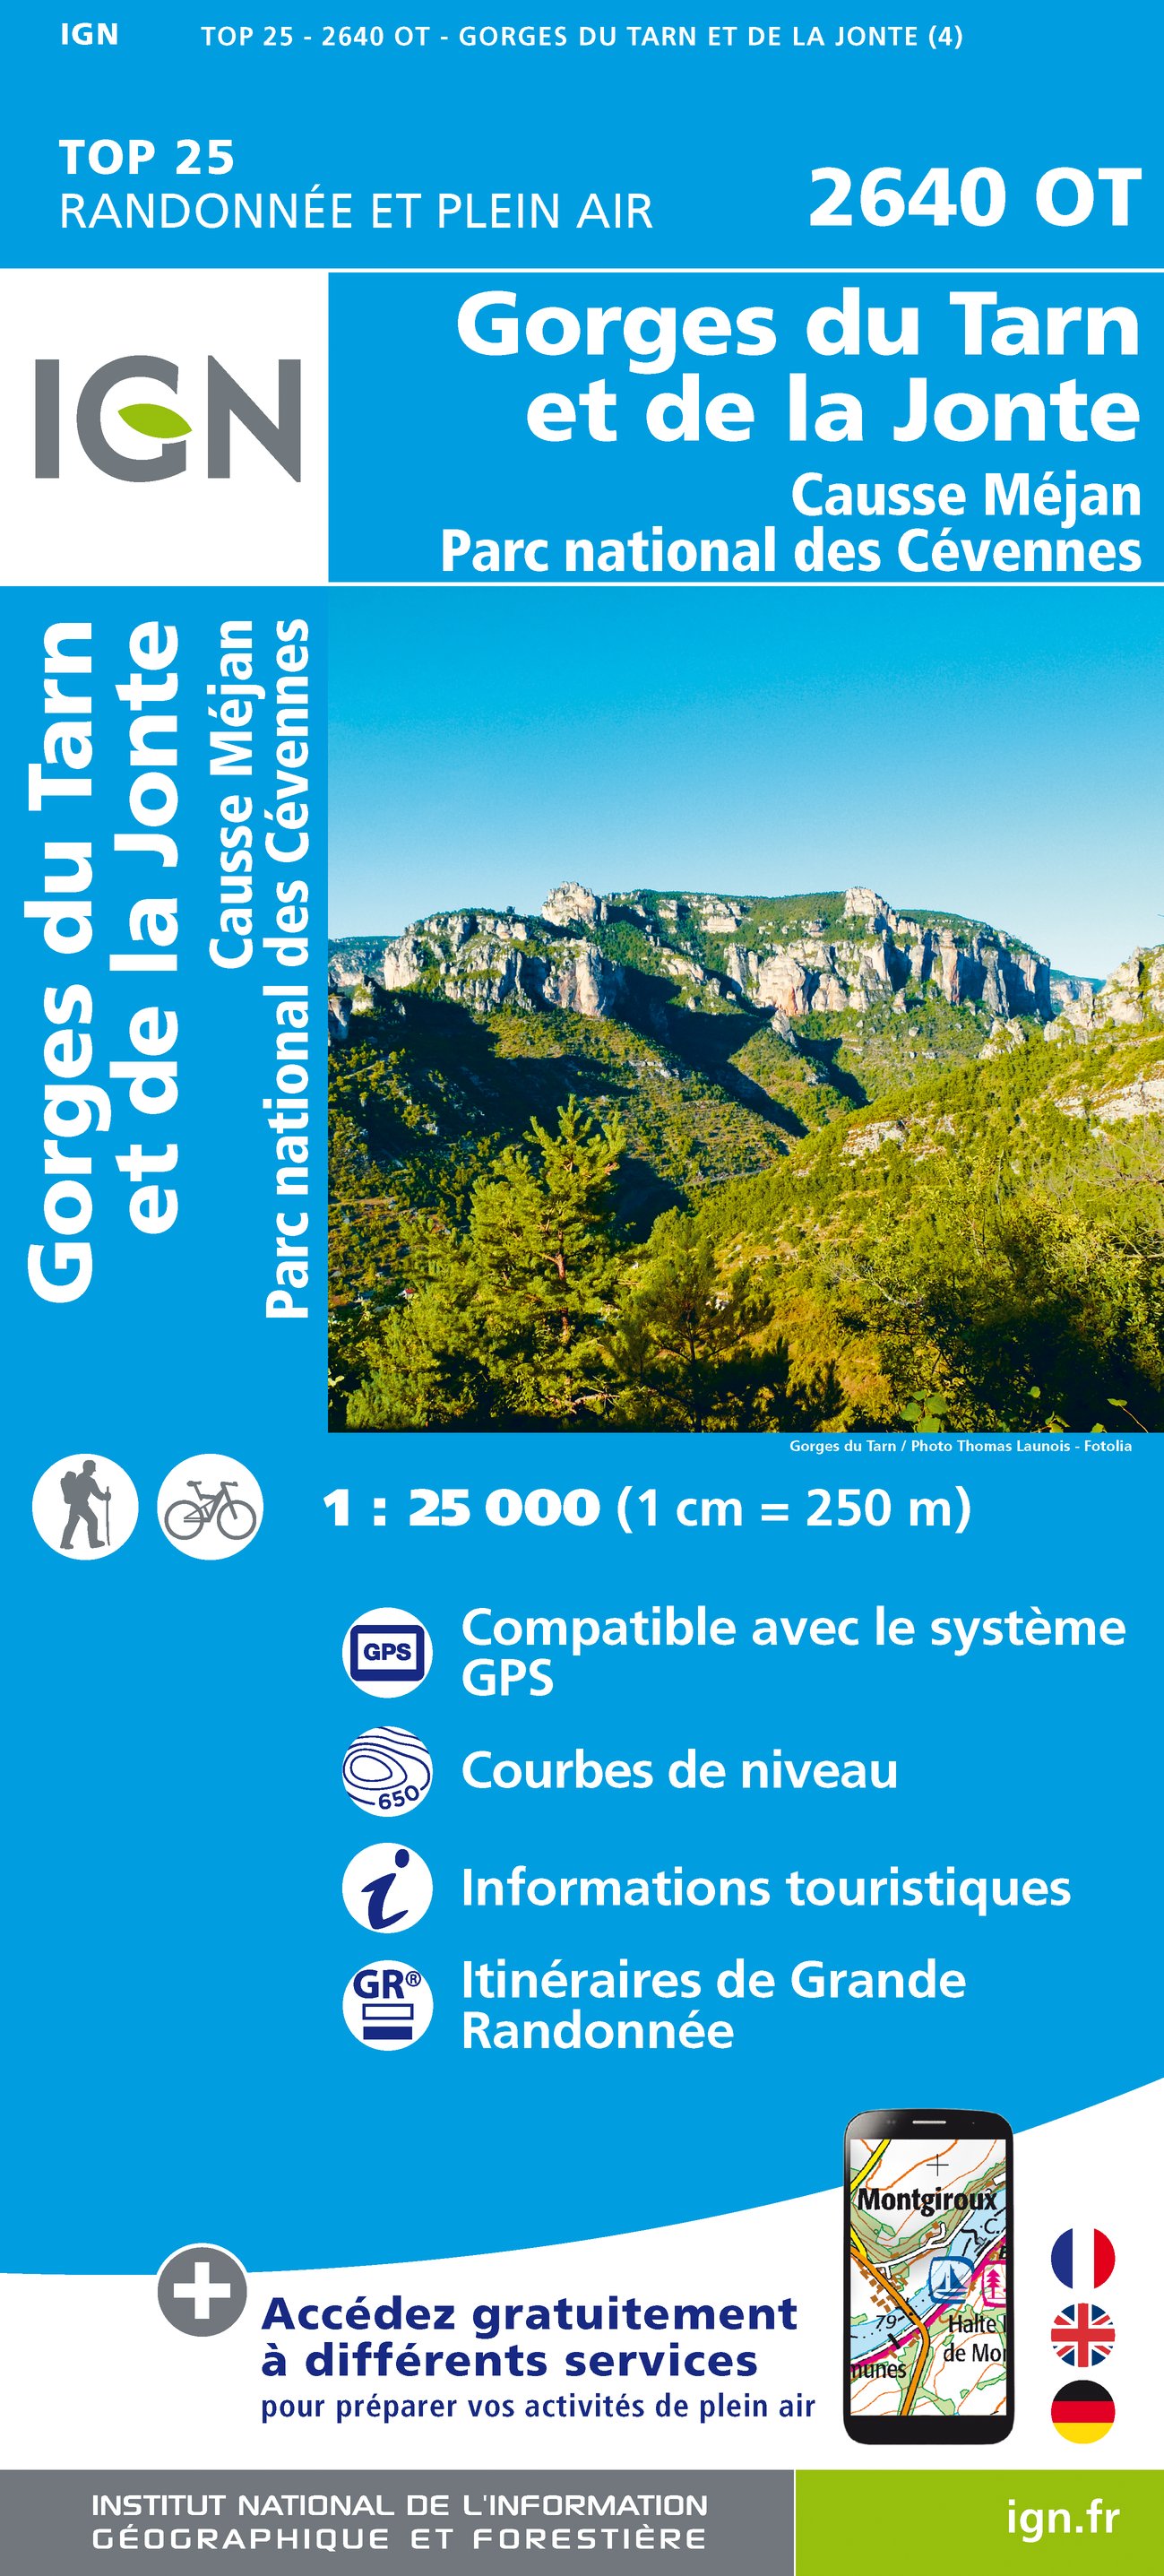 IGN.2640OT - Gorges du Tarn et de la Jonte / Causse Méjean P